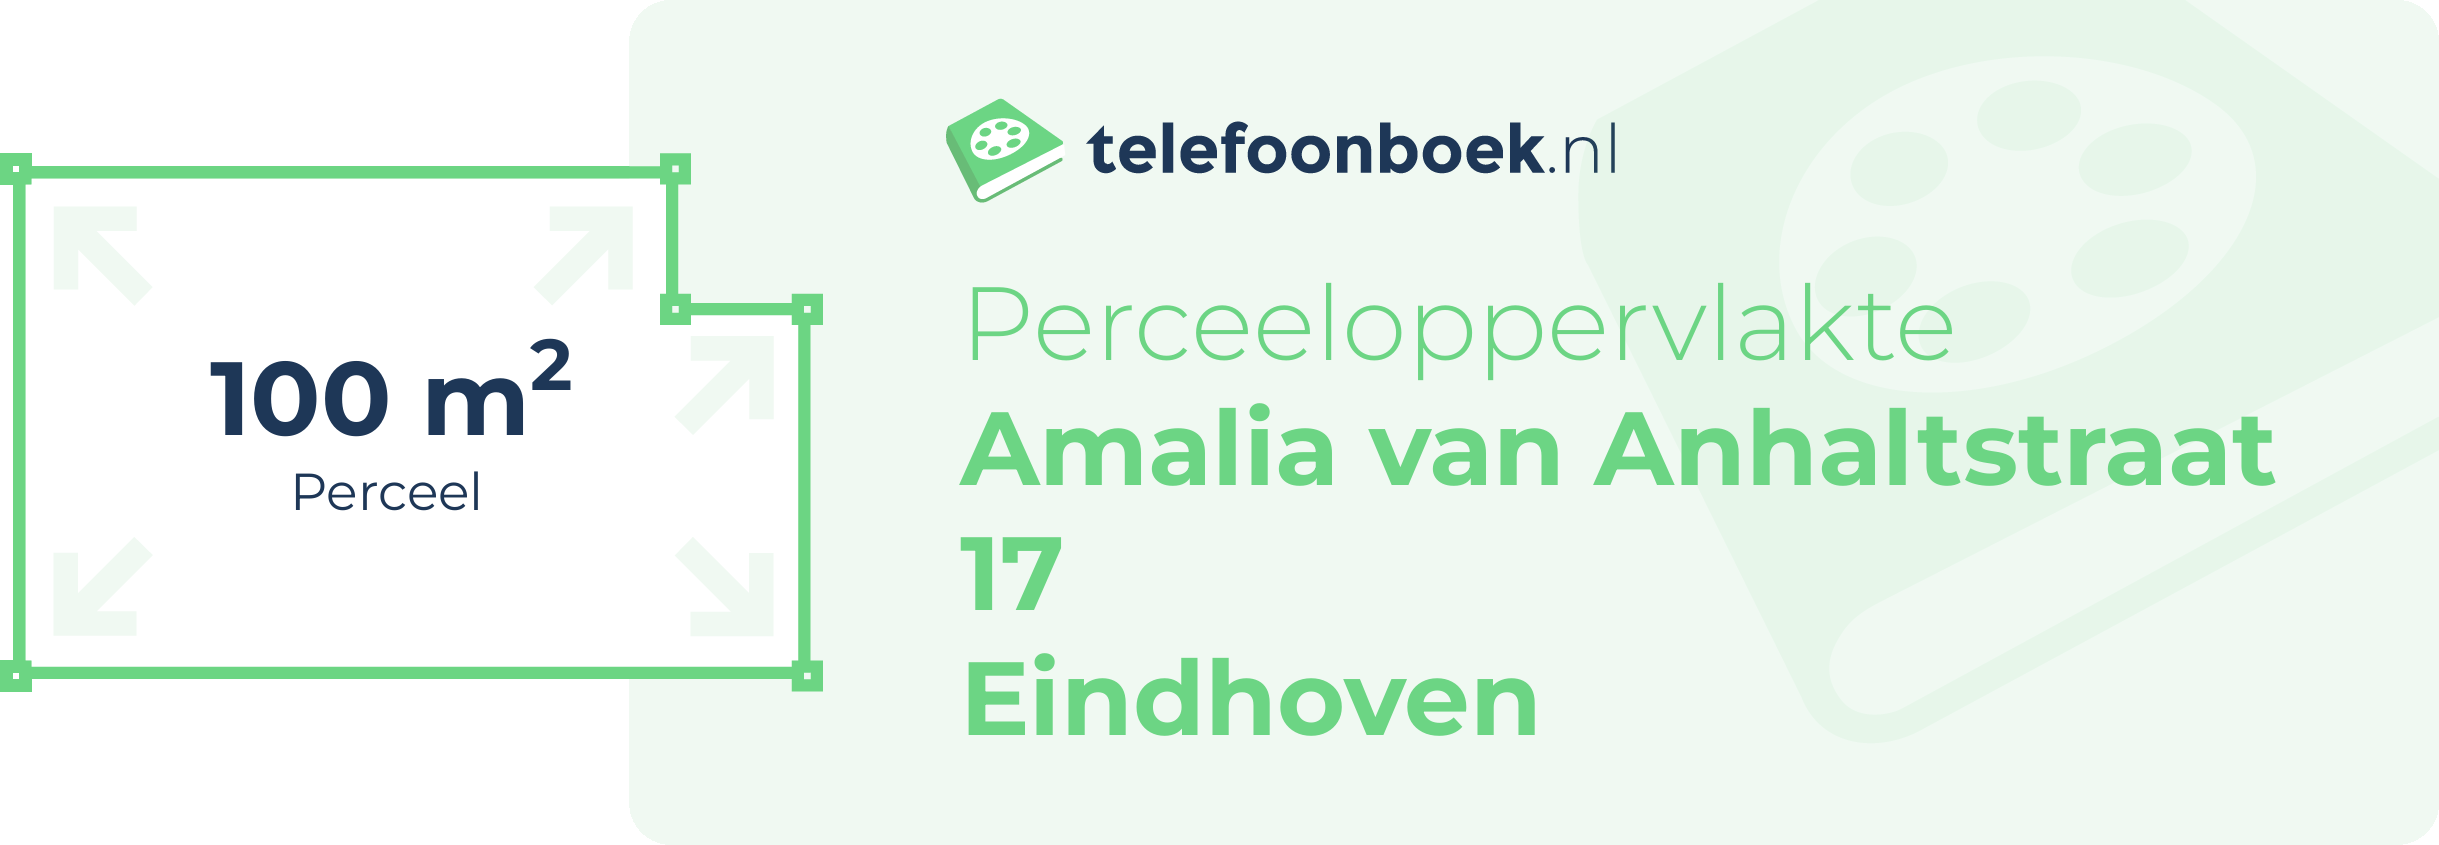 Perceeloppervlakte Amalia Van Anhaltstraat 17 Eindhoven